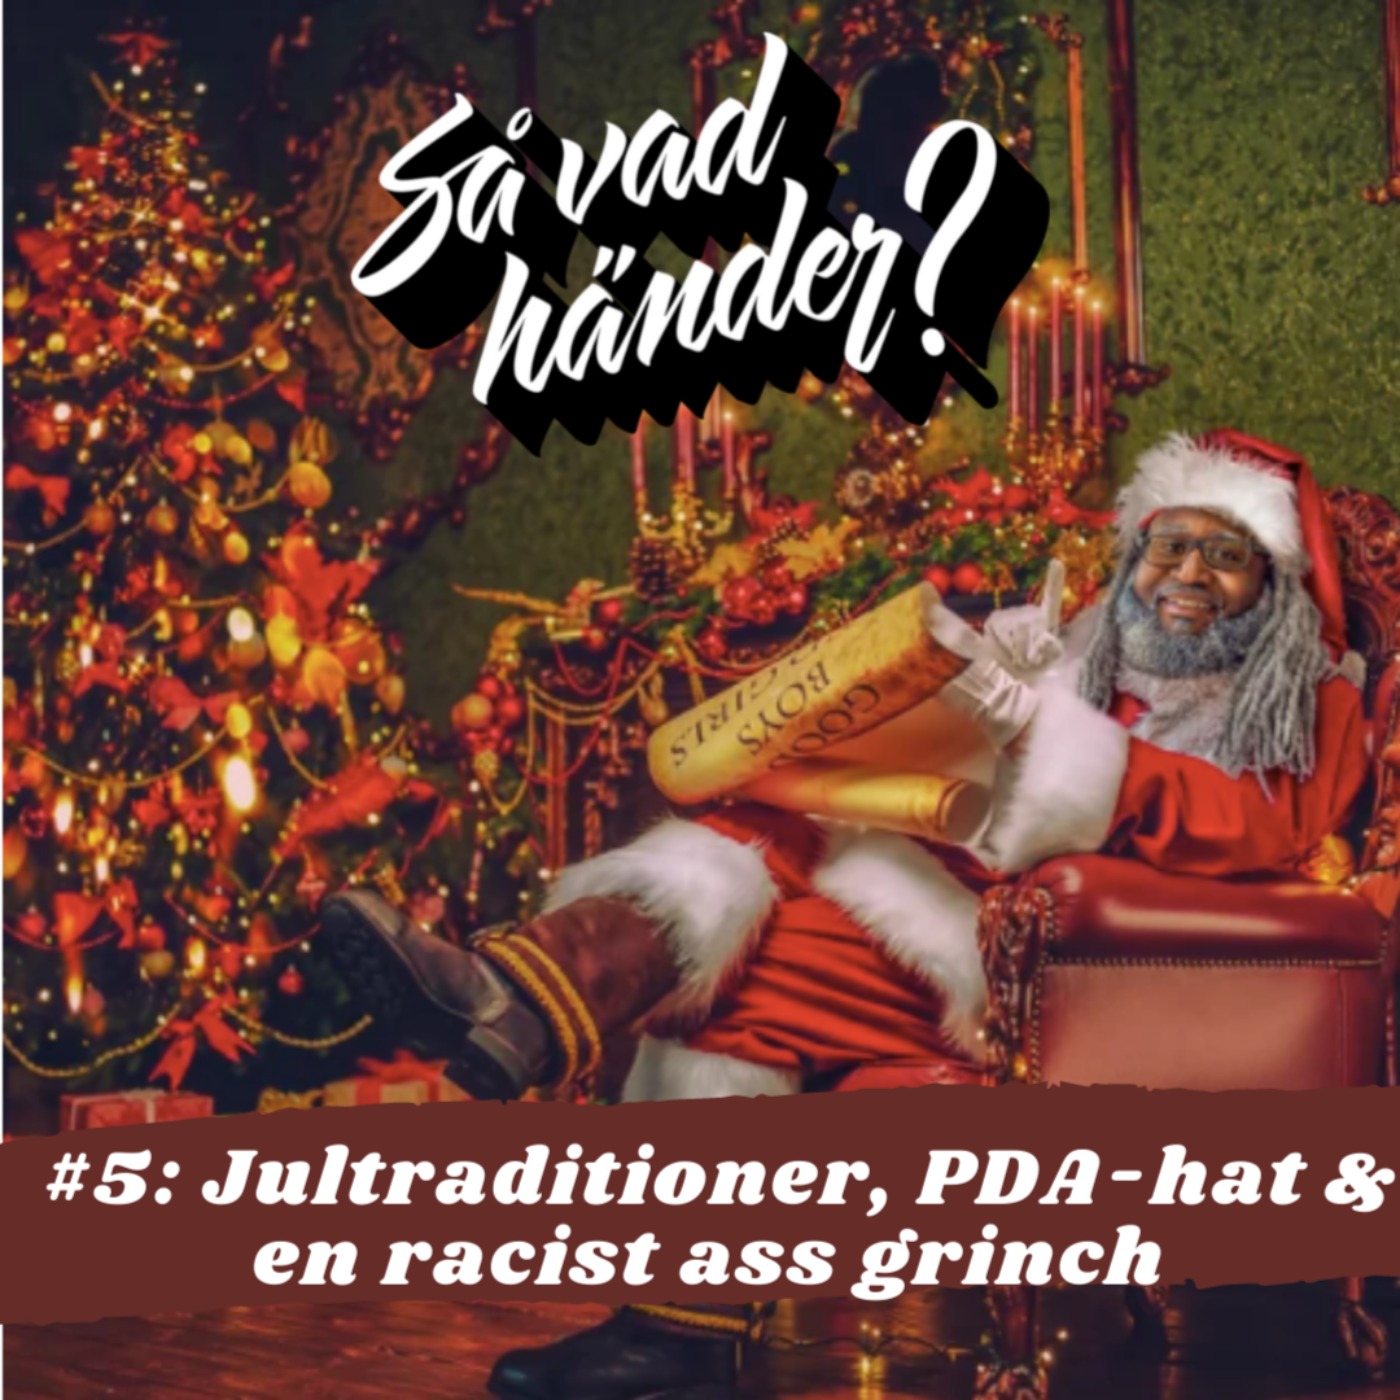 Så vad händer? #5: Jultraditioner, PDA-hat & en racist ass grinch